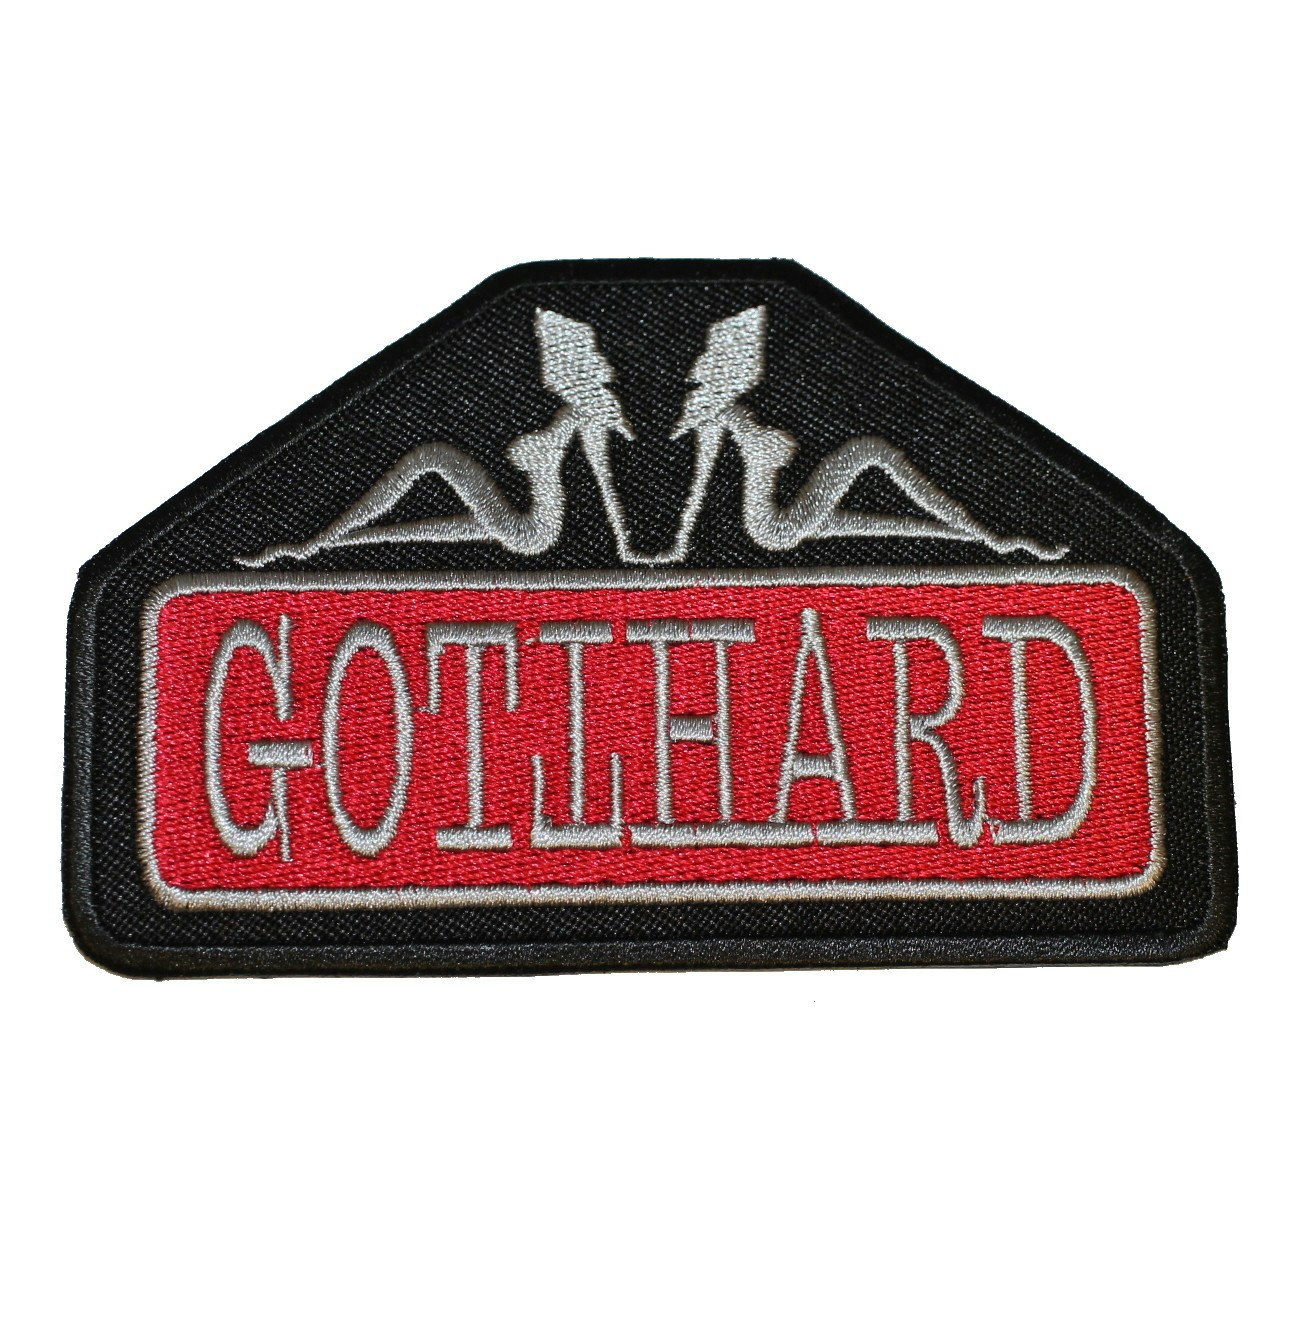 Gotthard logo patch